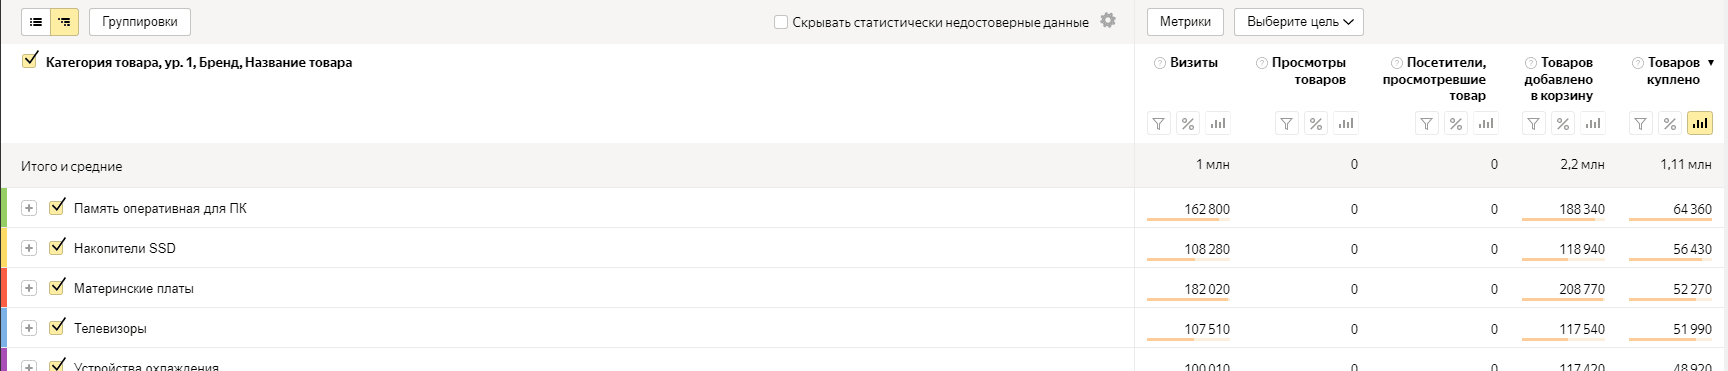 Отчет «Популярные категории и бренды» в Яндекс.Метрике Отчет «Популярные товары»